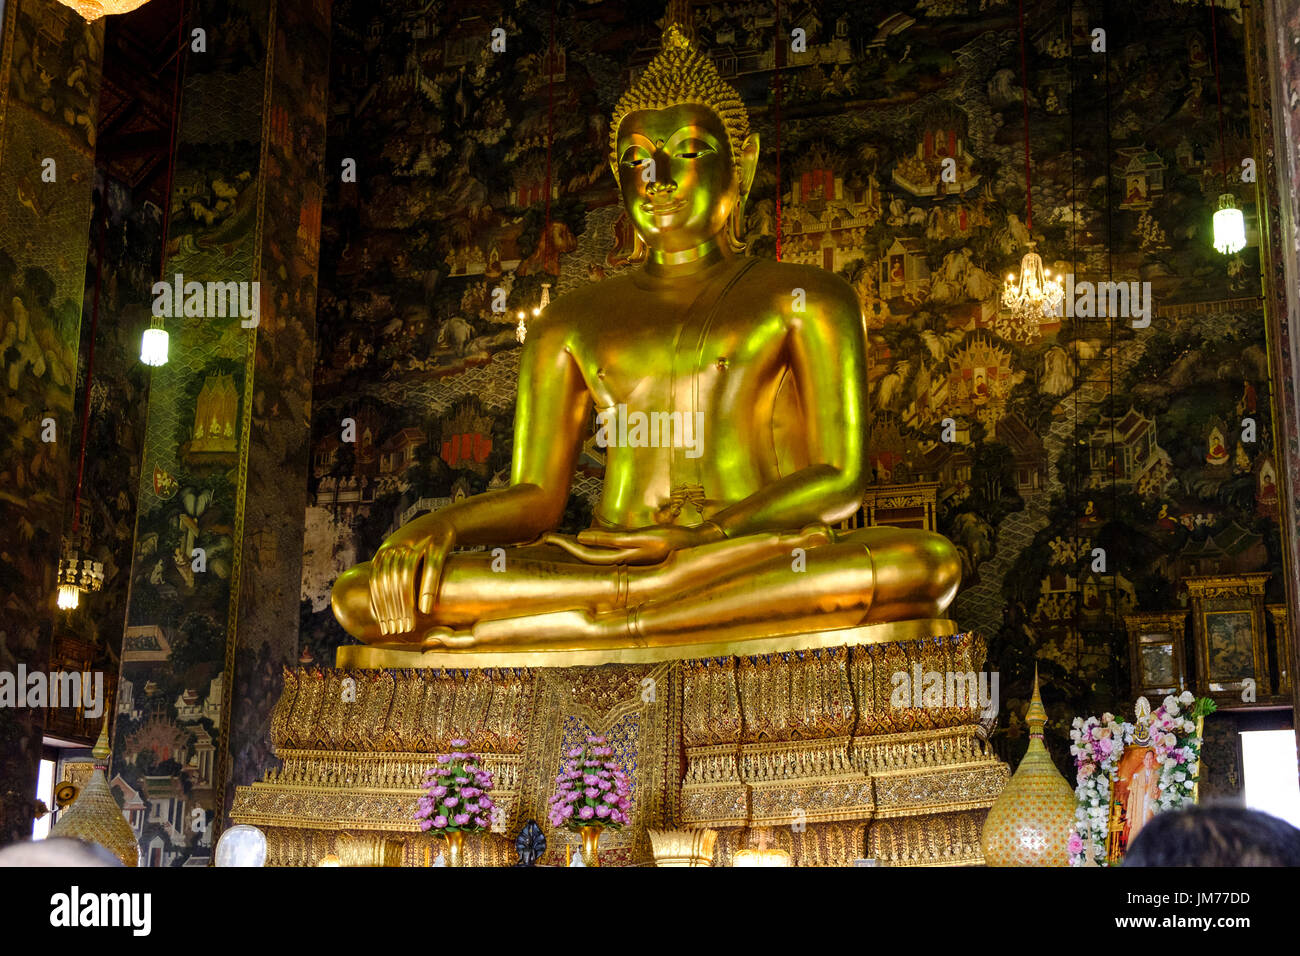 Sentada estatua de Buda de oro sobre el altar principal en Wat Suthat Thepwararam, un templo budista en Bangkok, Tailandia. Foto de stock